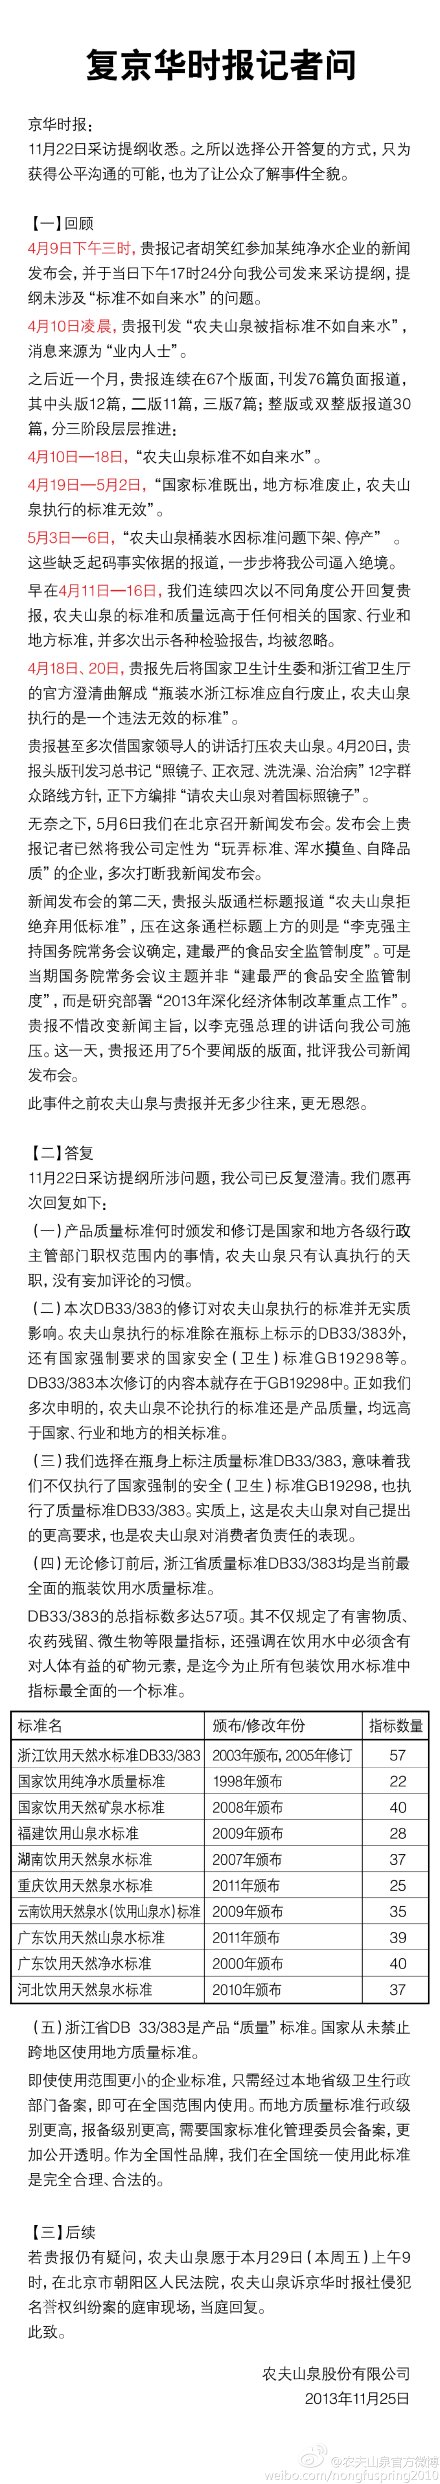 农夫山泉回复京华时报：DB33/383修订无实质影响